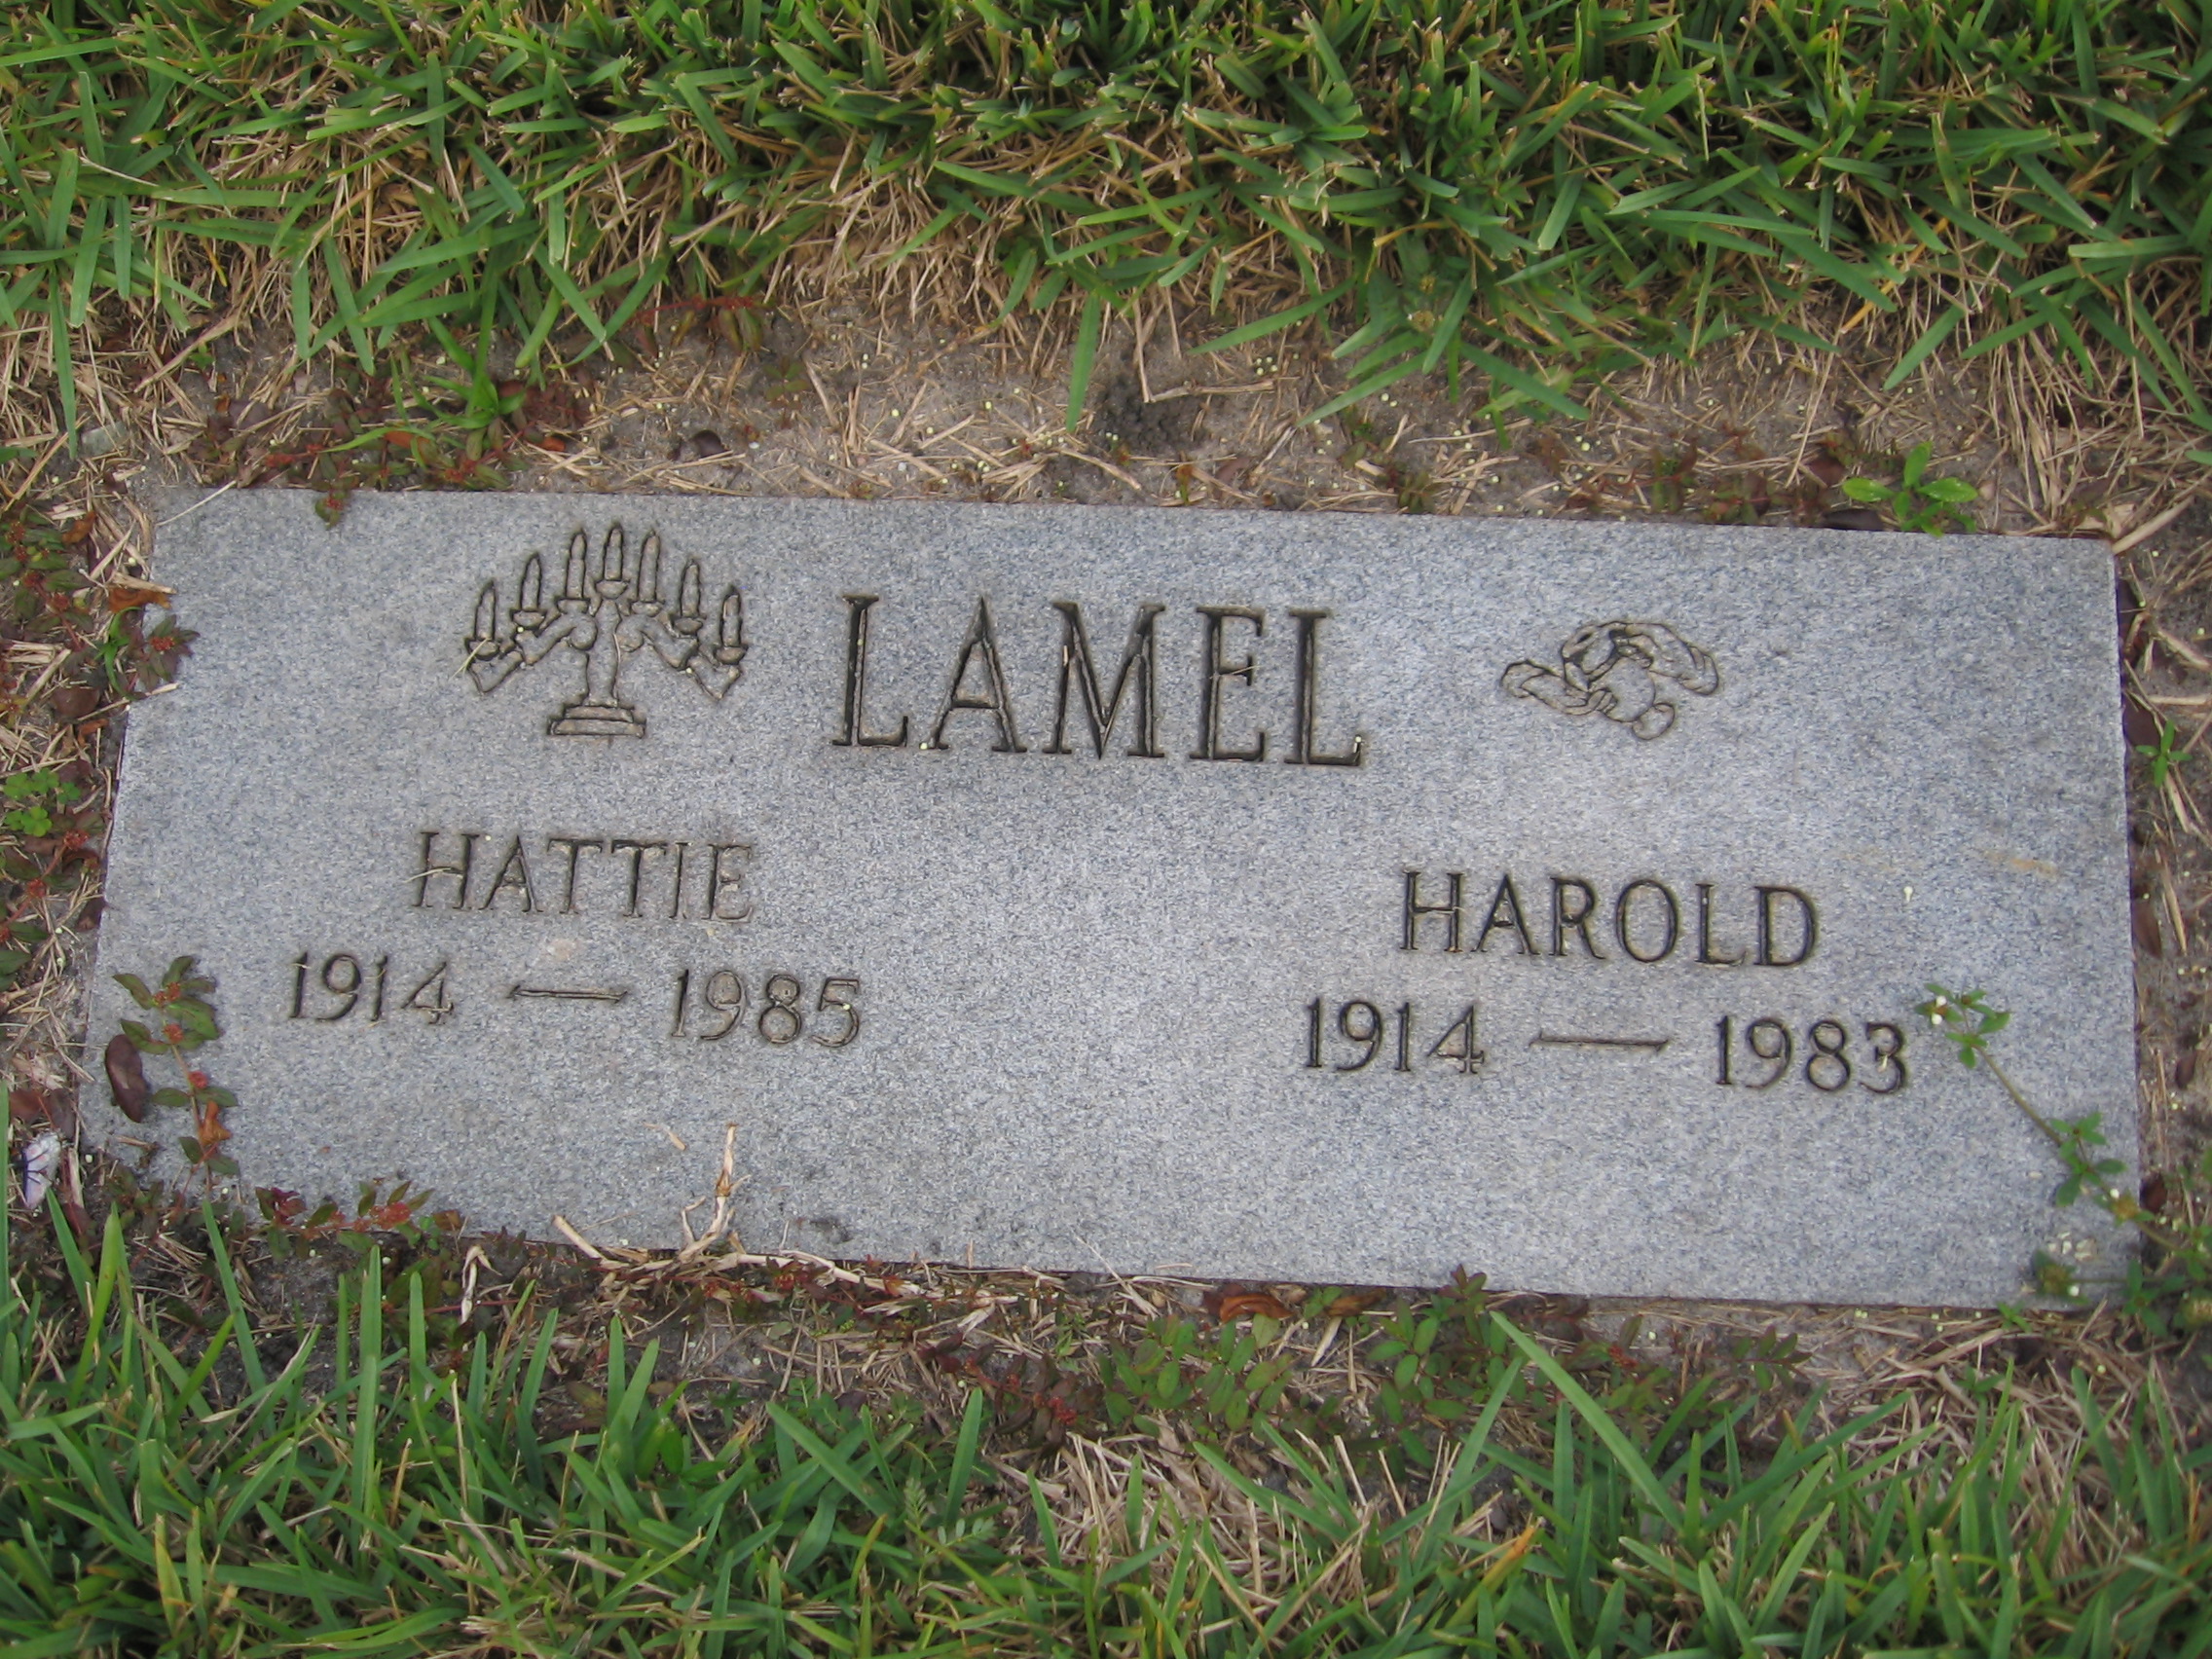 Hattie Lamel